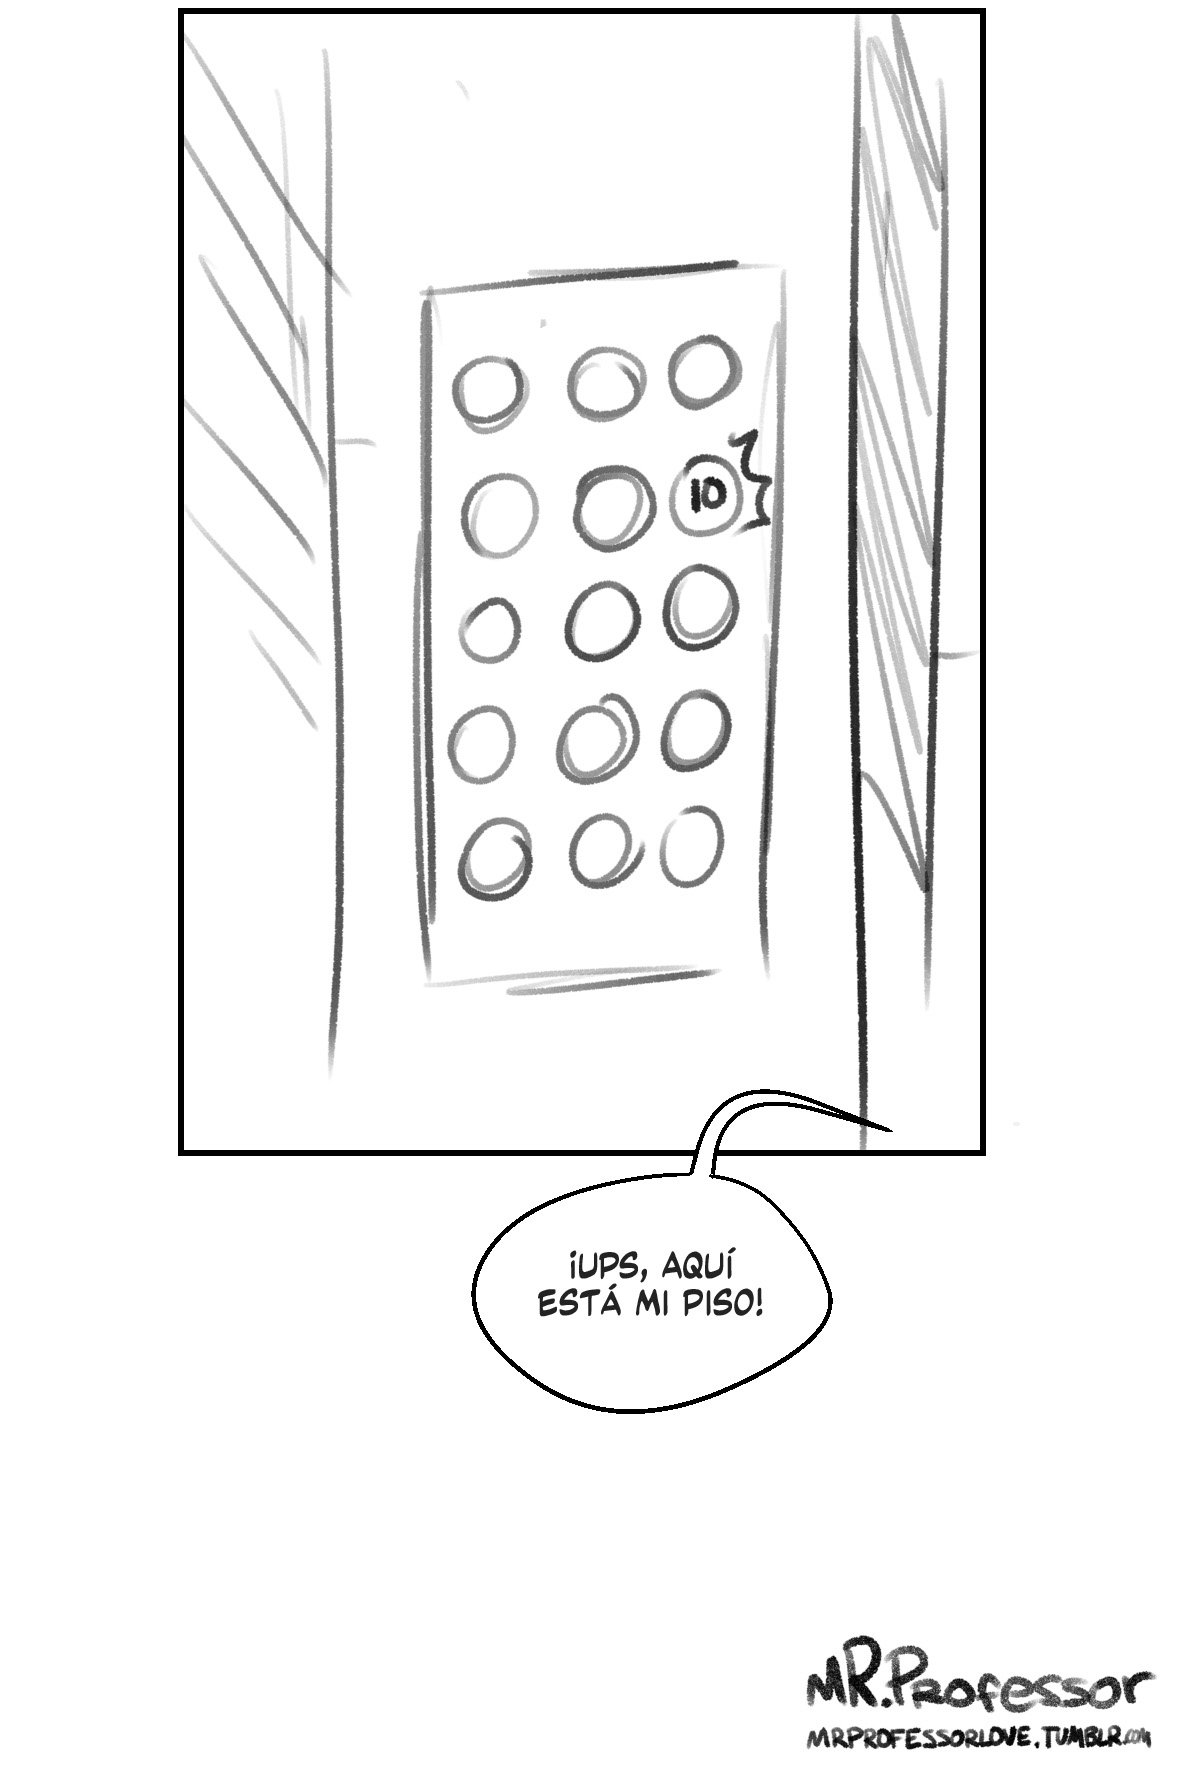 Tight Elevator (spanishl) - 23